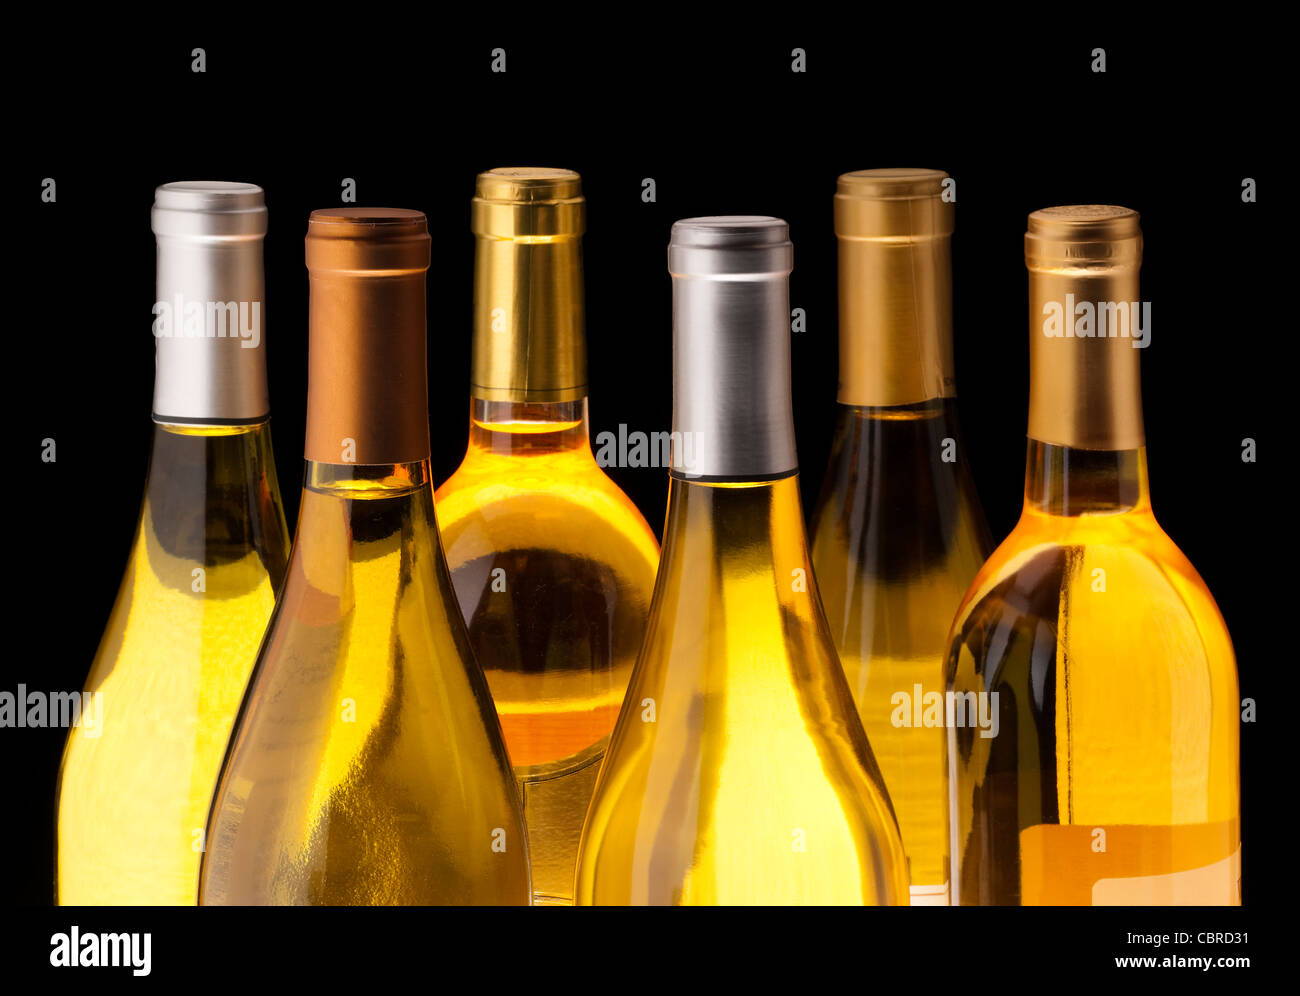 White wine bottles on black background Stock Photo